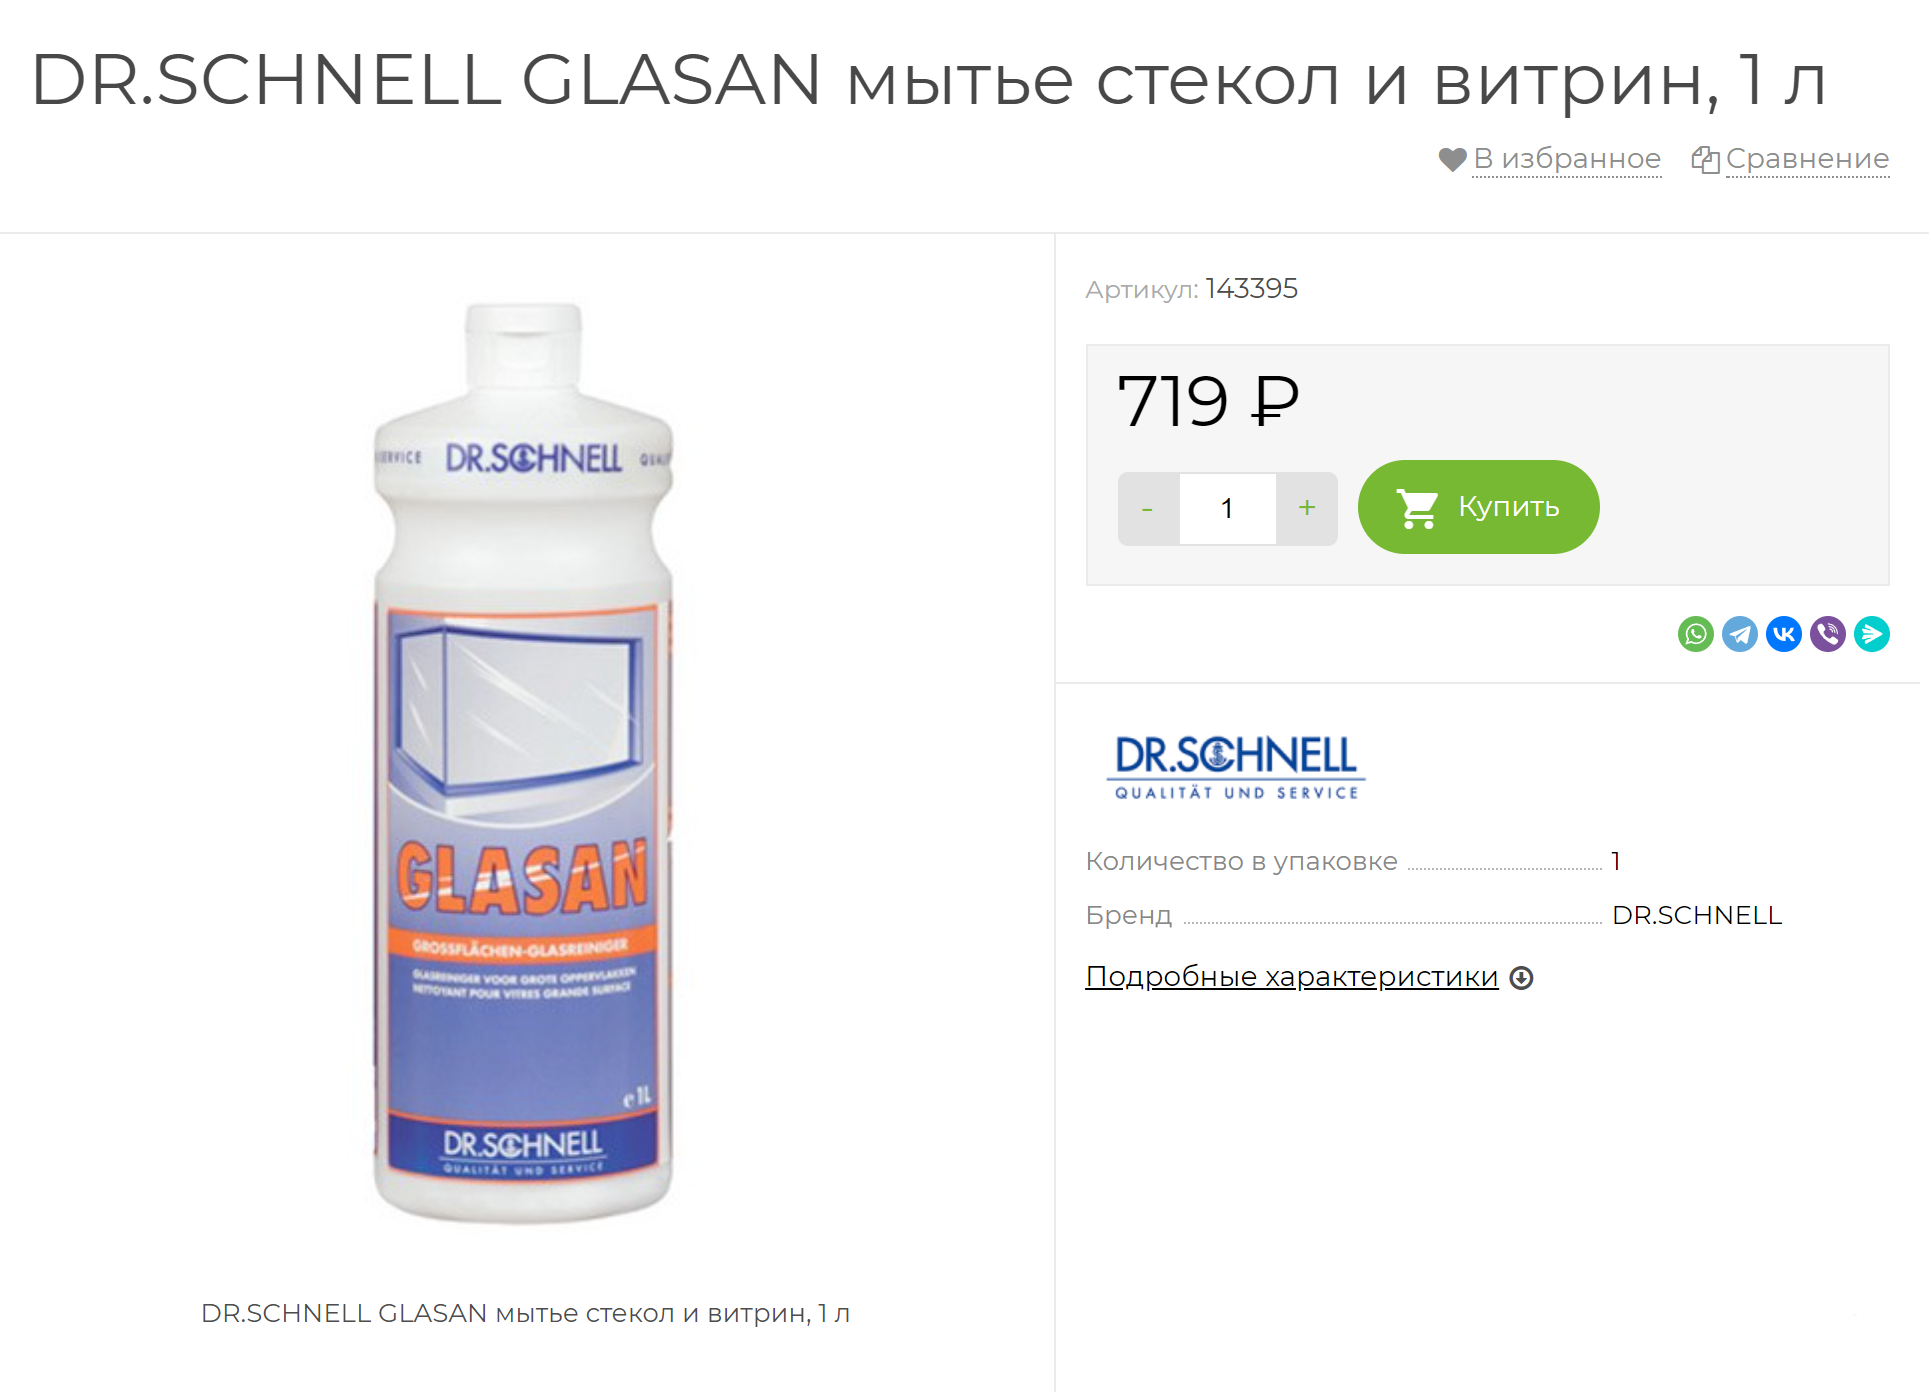 Это профессиональное средство для мытья больших остекленных площадей. Если купить такую бутылочку домой, ее хватит надолго. Источник: eco-serv.ru